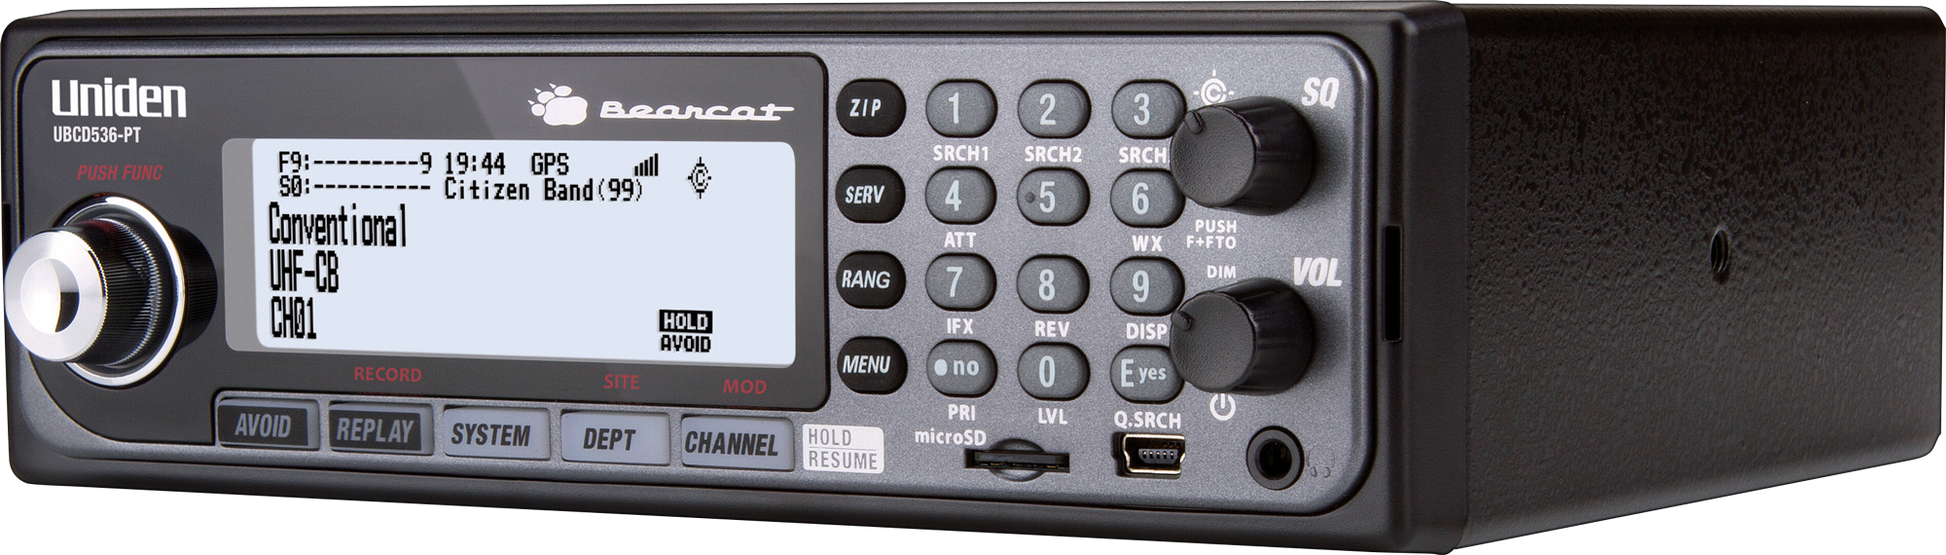 UBCD 536PT - DESKTOP DIGITAL SCANNER - G&C Communications